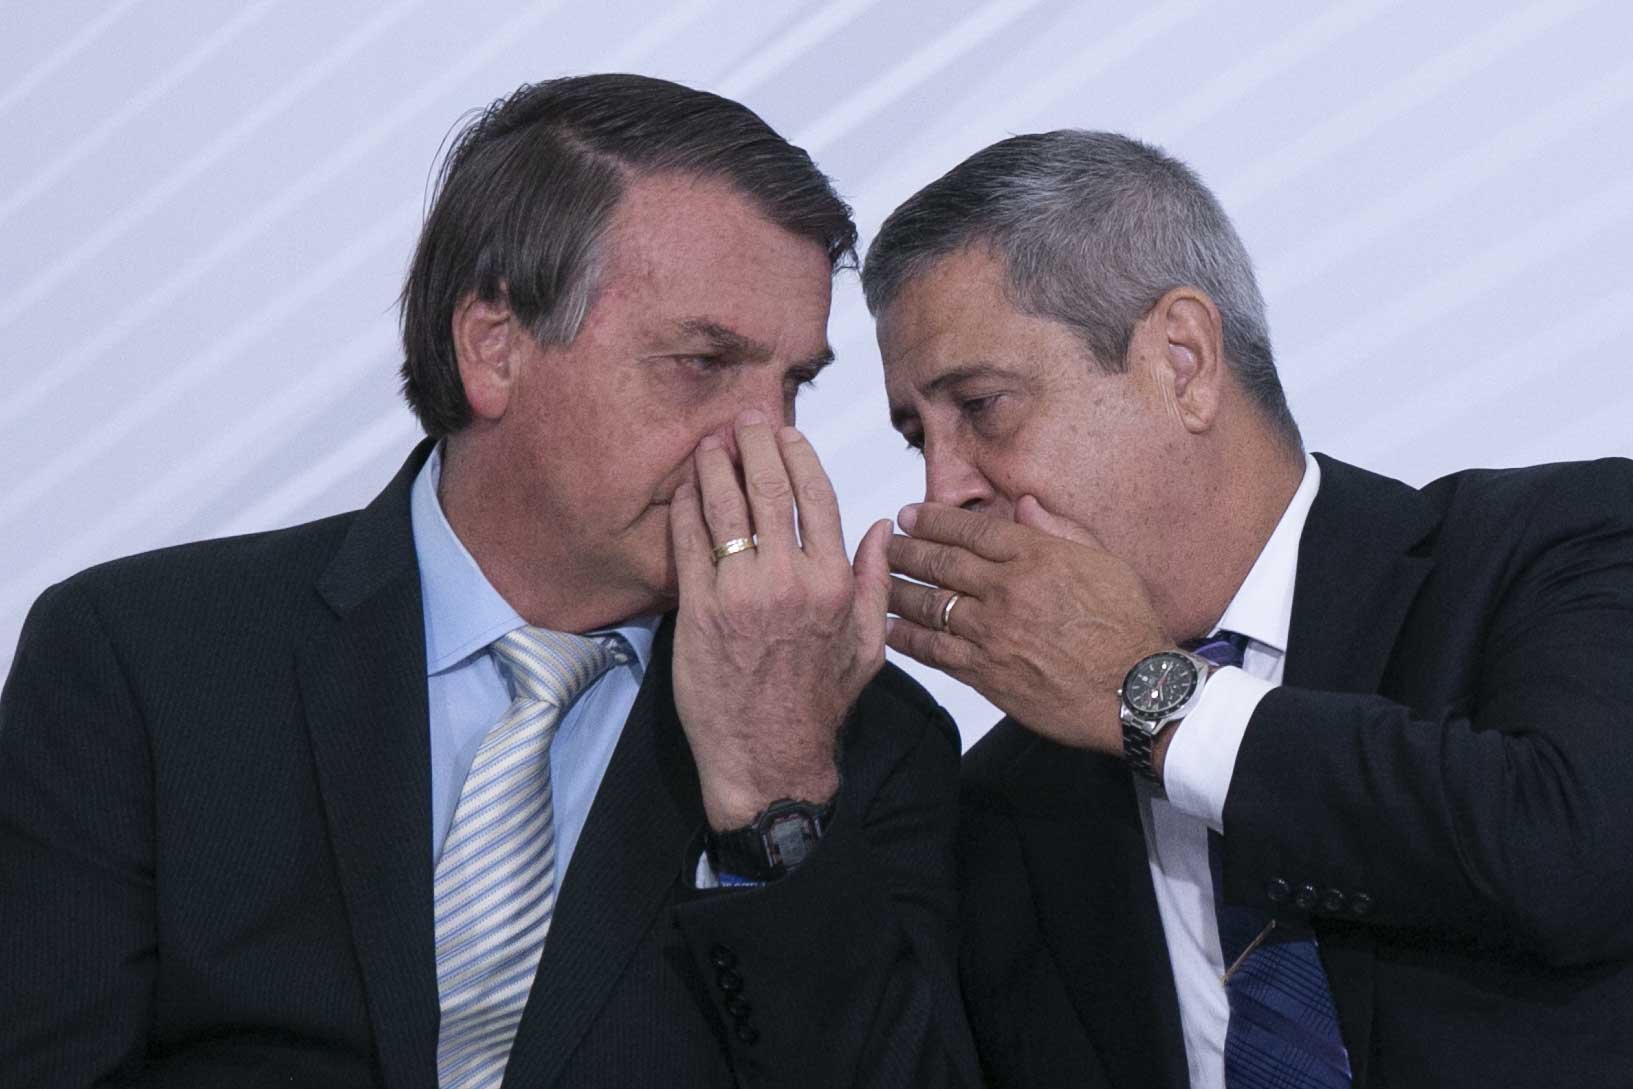 ALVOS: PF faz megaoperação contra Bolsonaro e aliados por tentativa de golpe